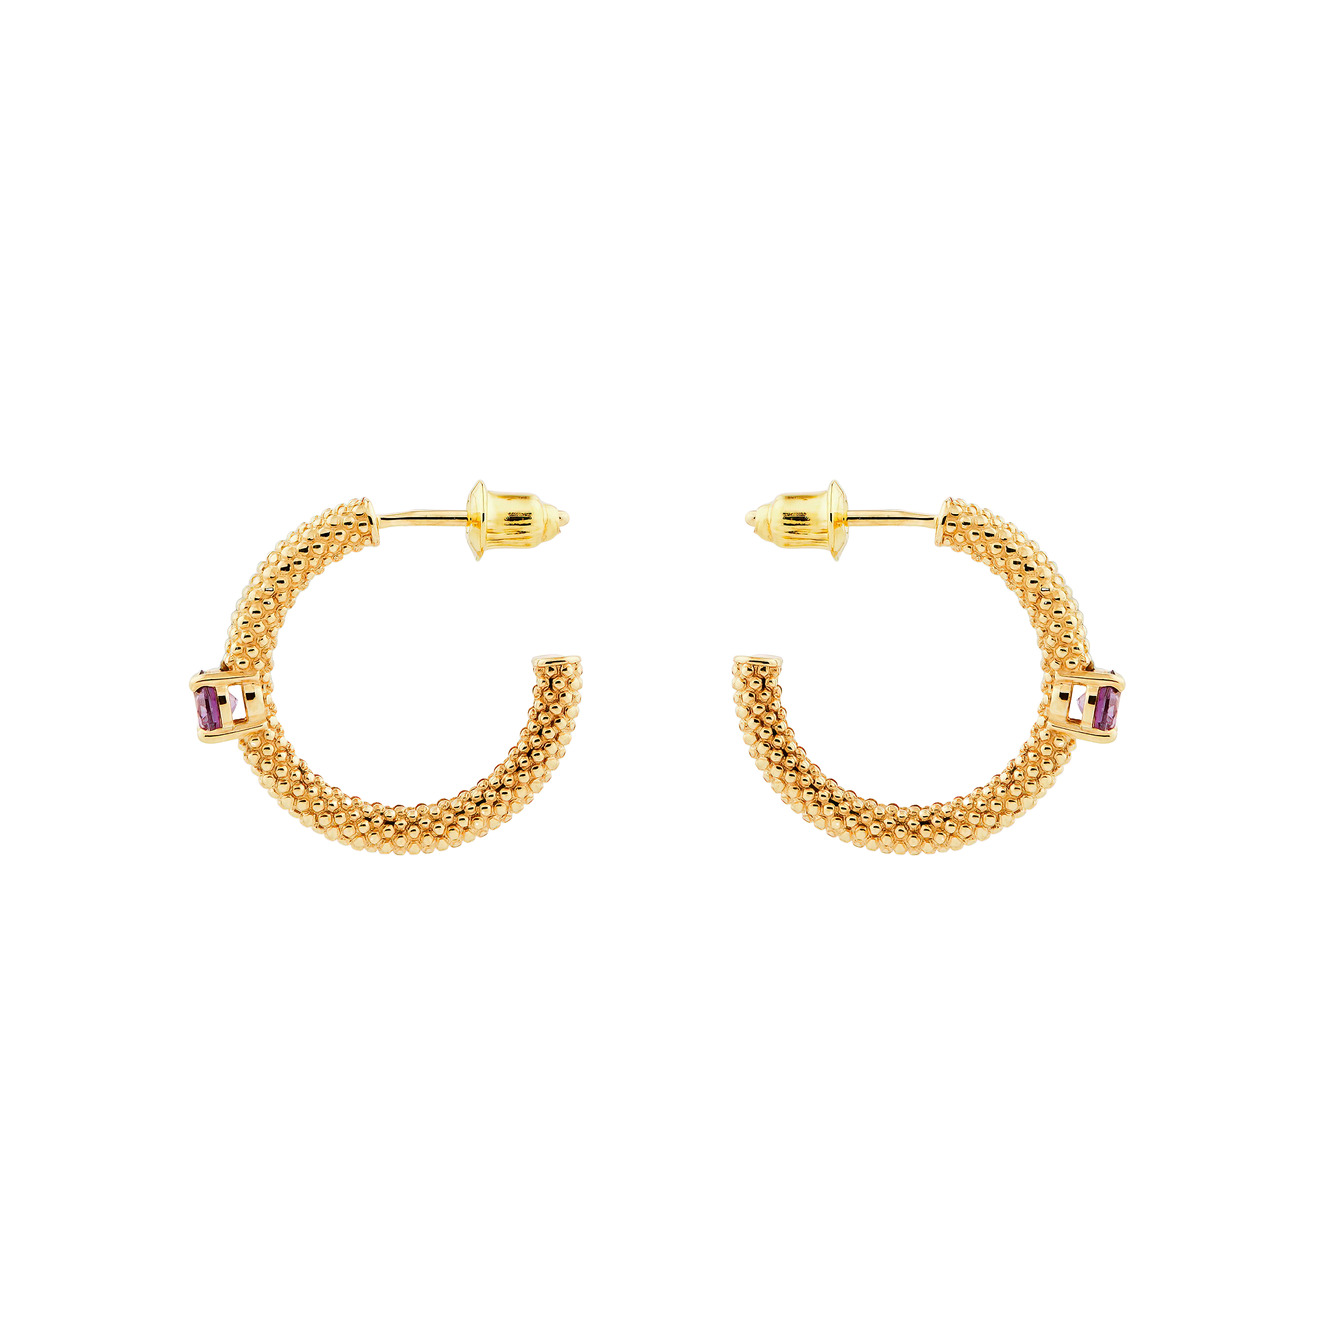 KRASHE jewellery Позолоченные серьги-кольца «Золотые мурашки» с фиолетовым фианитом серьги с фиолетовым кошачьим глазом греческие